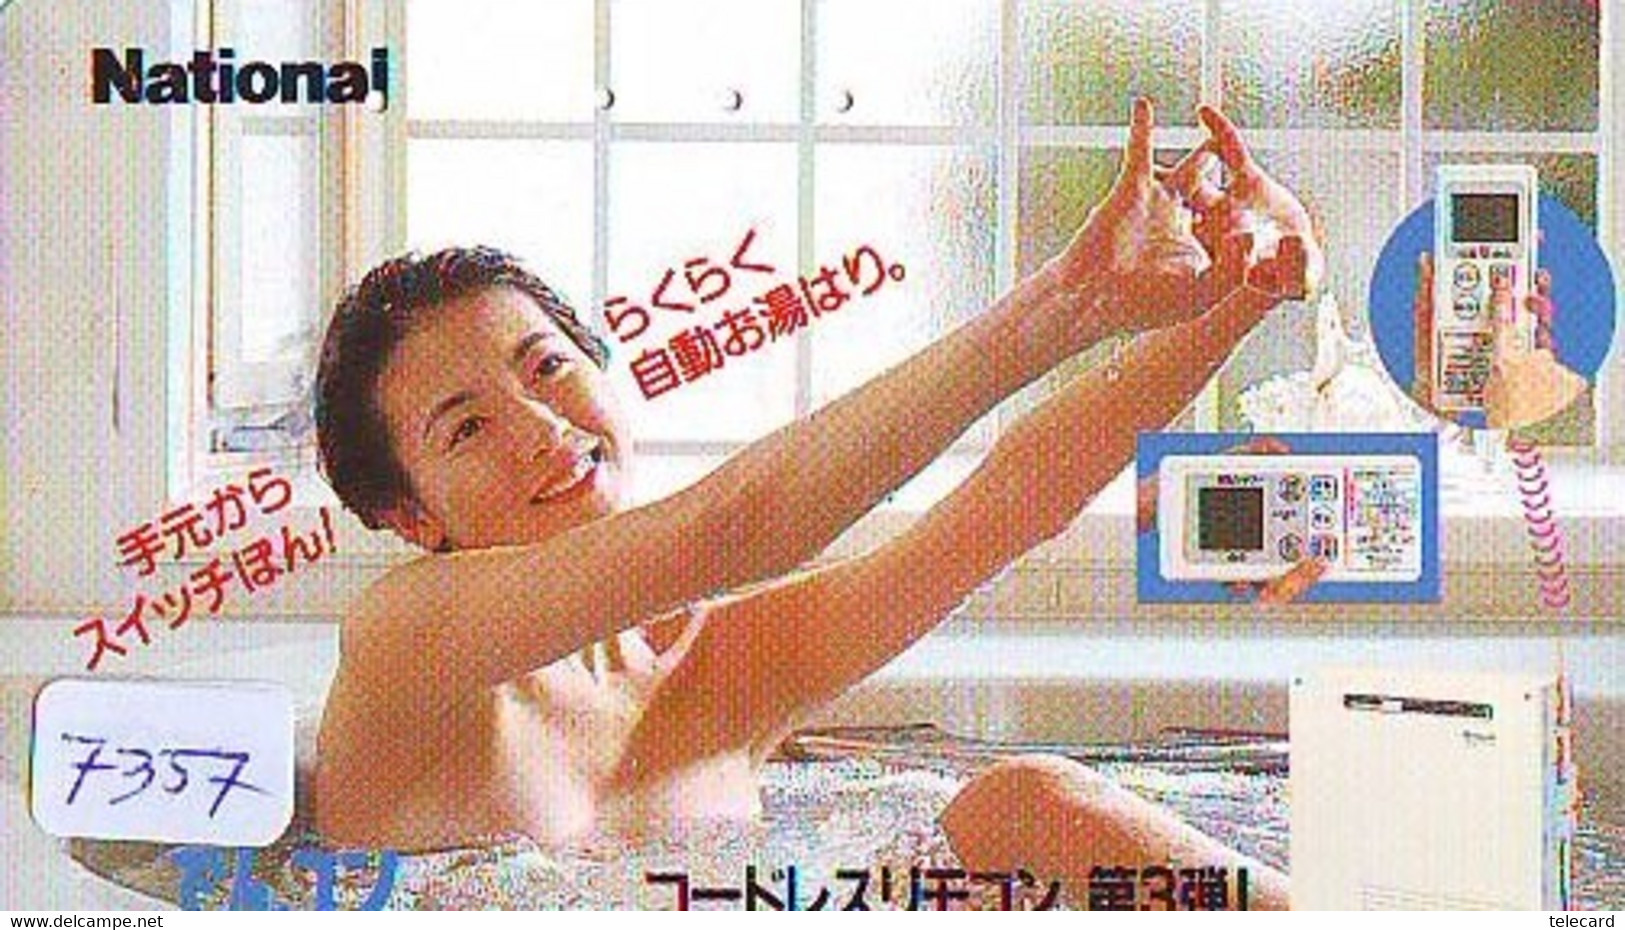 Télécarte Japon * FEMME EROTIQUE (7357) BATH * PHONECARD JAPAN * TELEFONKARTE *  BATHCLOTHES LINGERIE - Moda